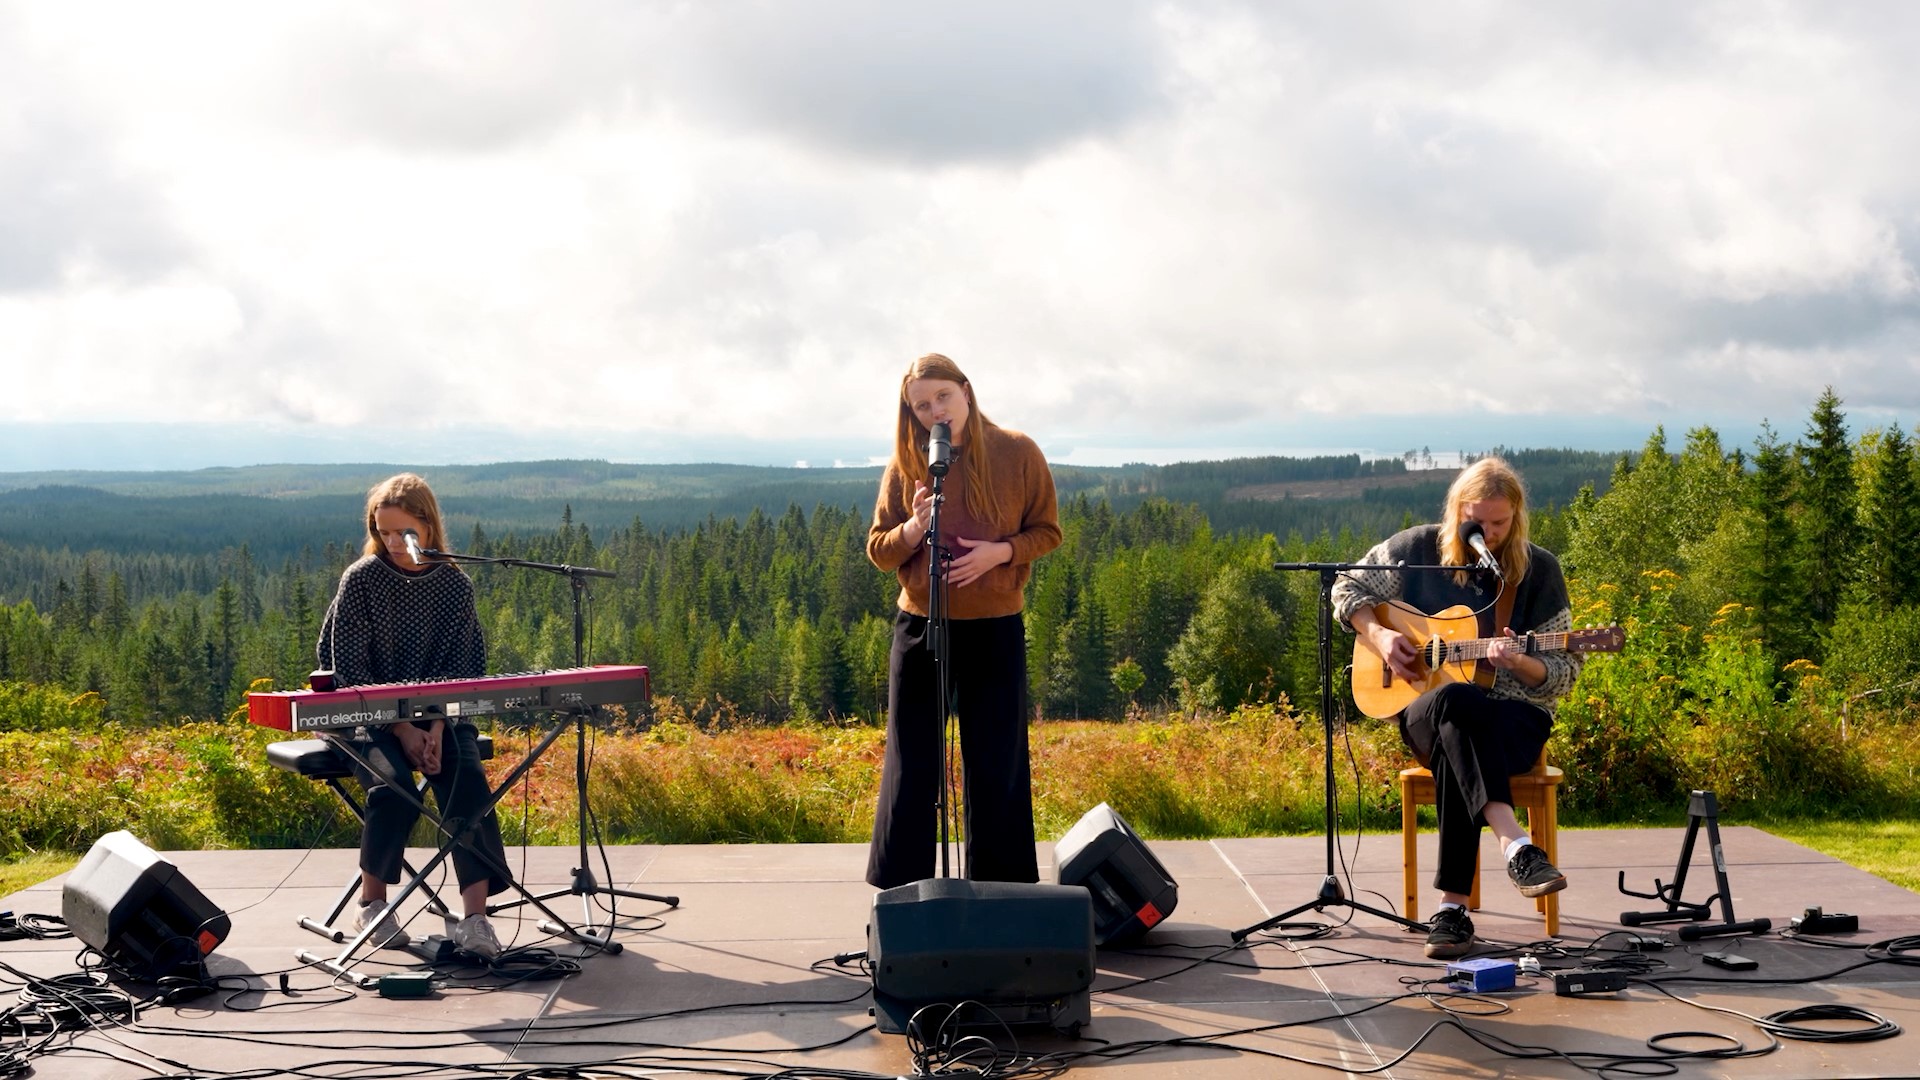 Orsa Live Sessions spelar in musik och video i naturen kring Orsa, Dalarna.